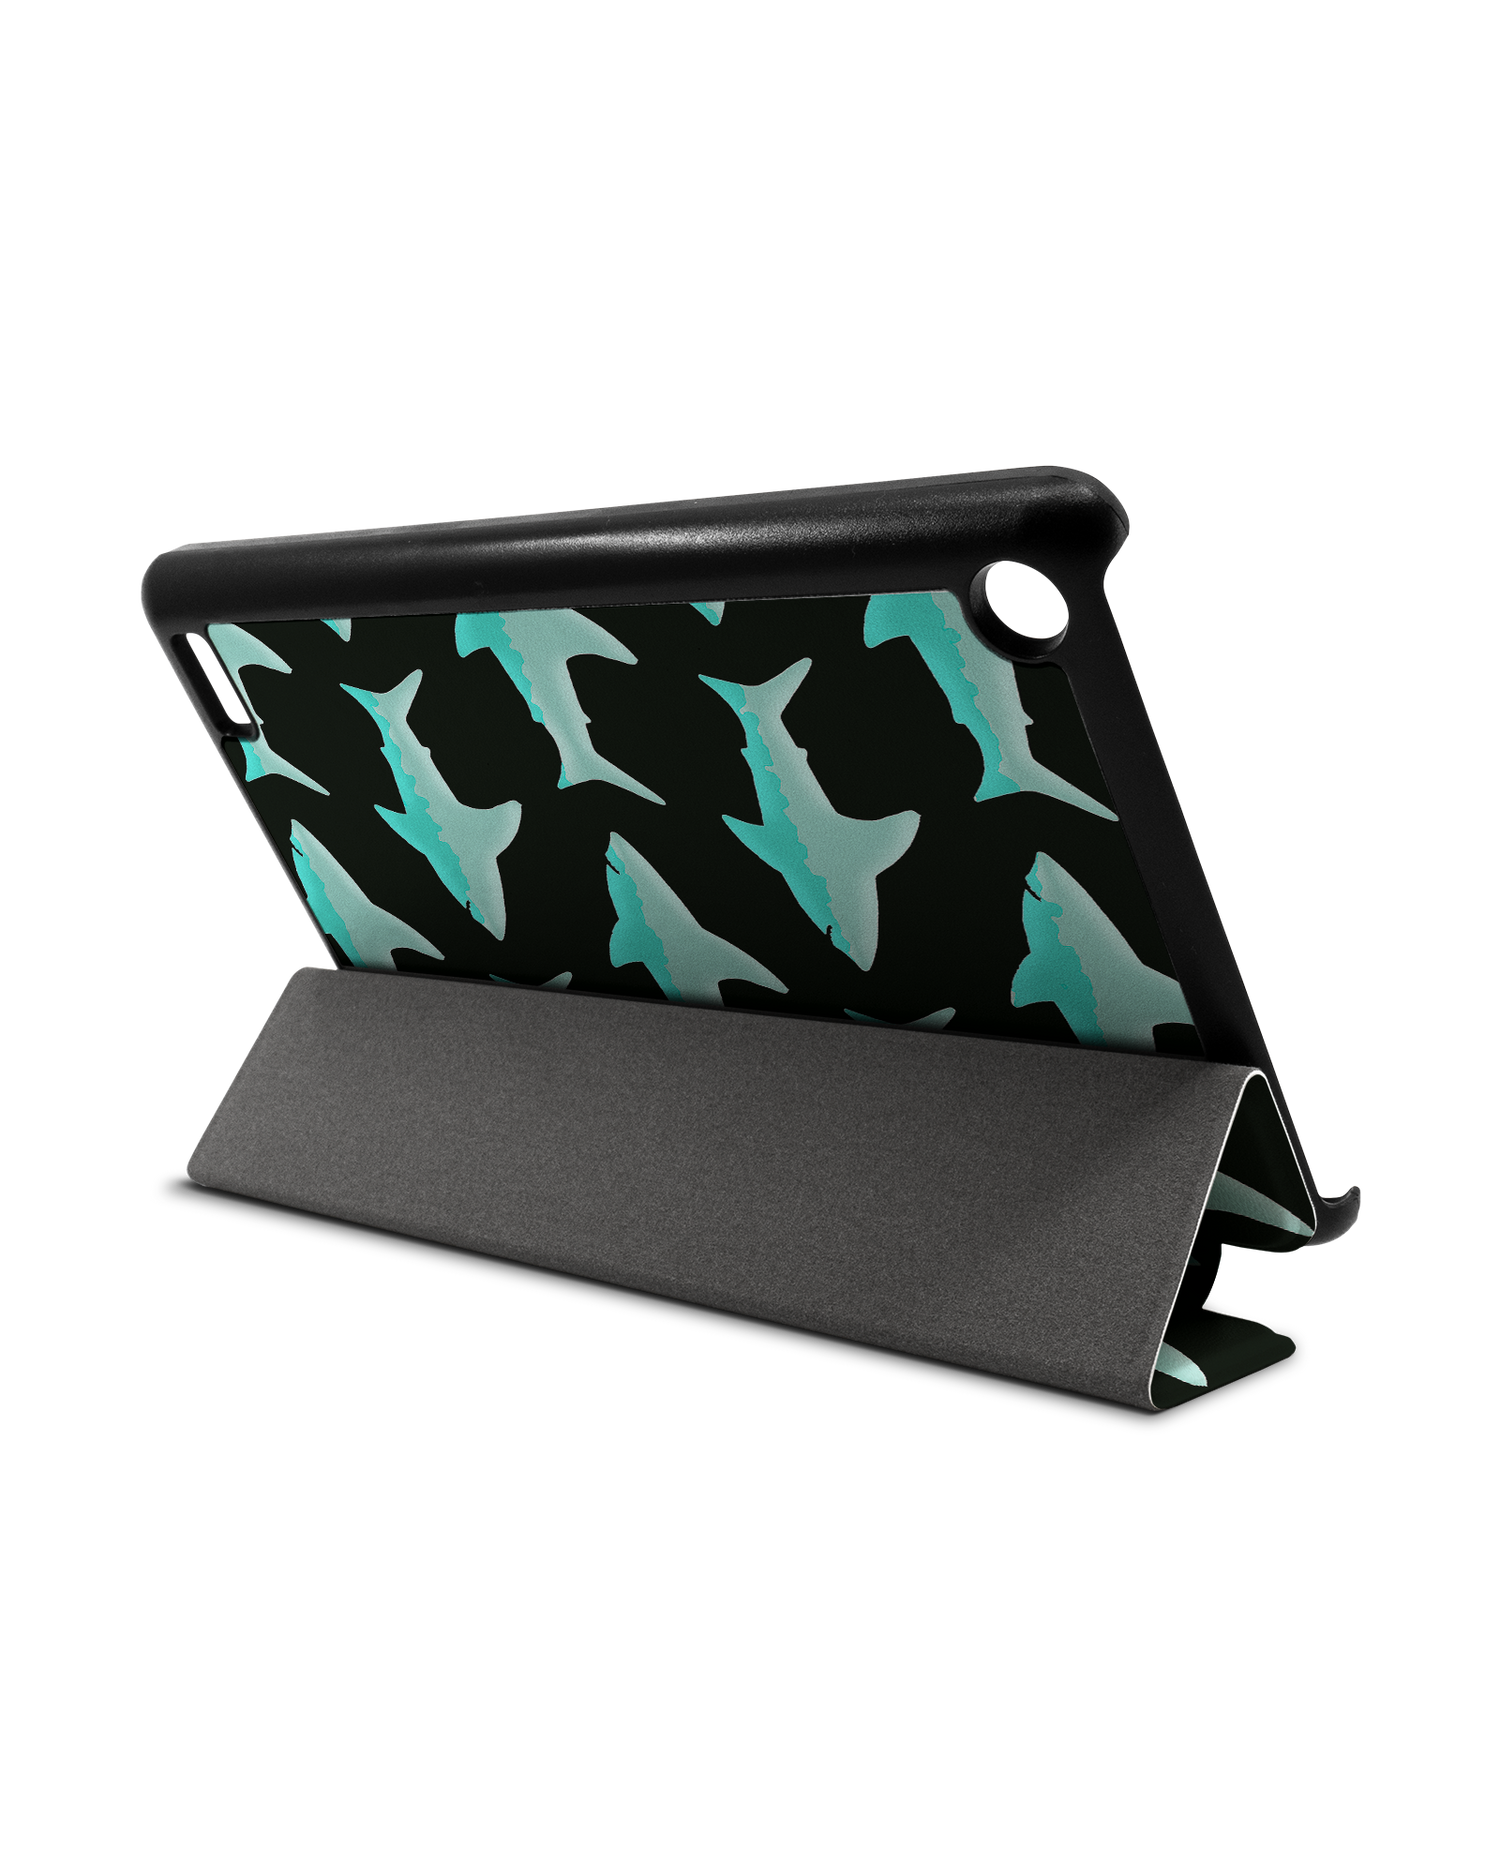 Neon Sharks Tablet Smart Case für Amazon Fire 7: Aufgestellt im Querformat